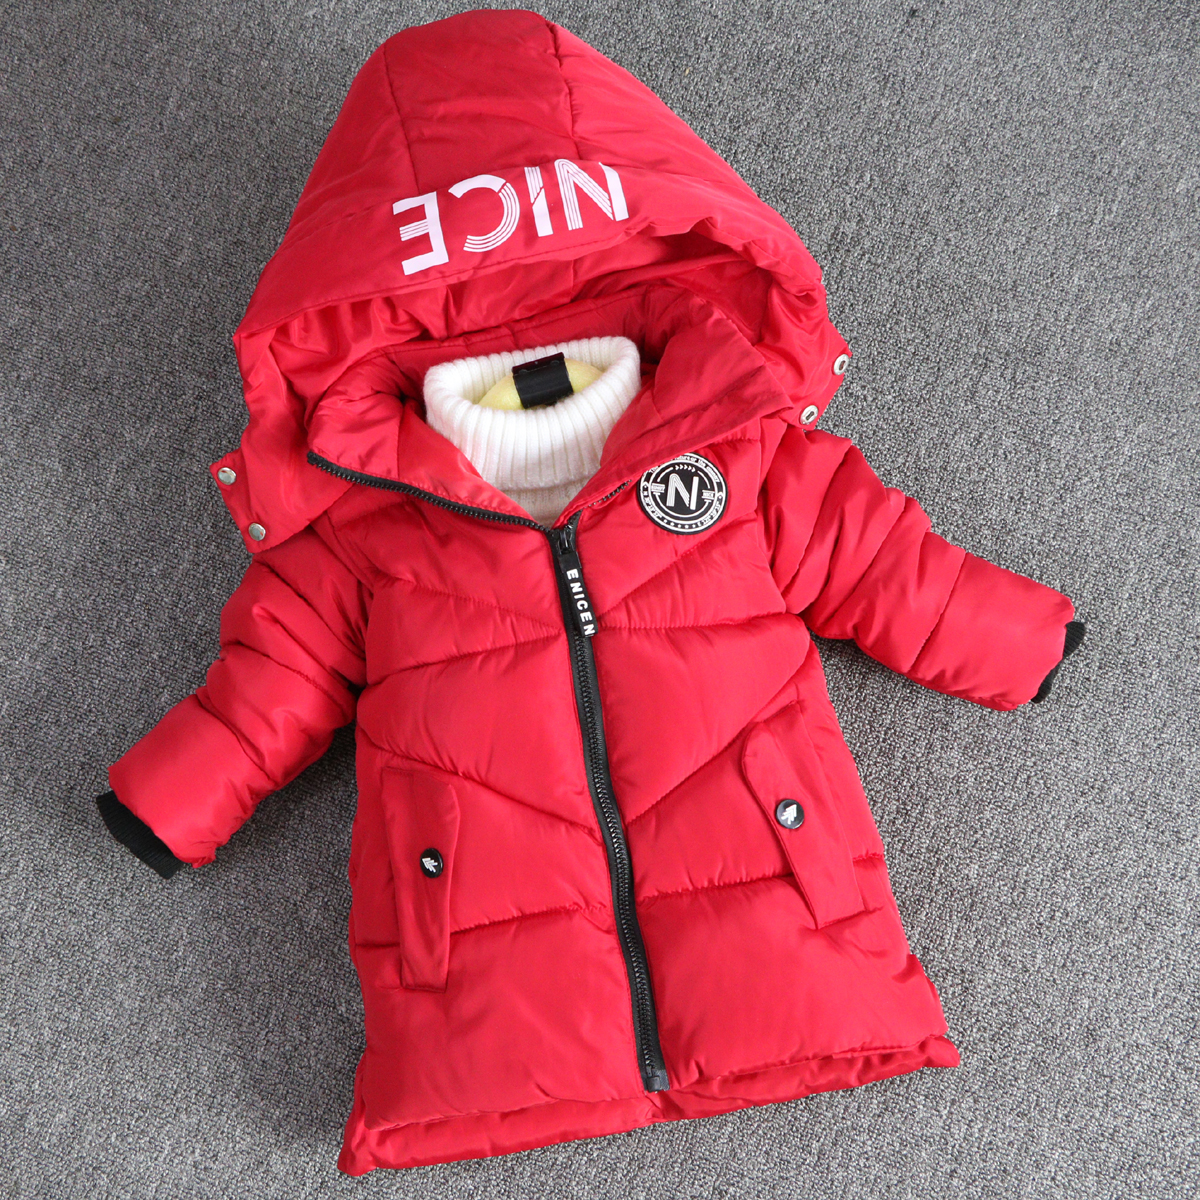 童装 男童外套 内胆类型:棉内胆 品牌:红果果童装 安全等级:b类 材质